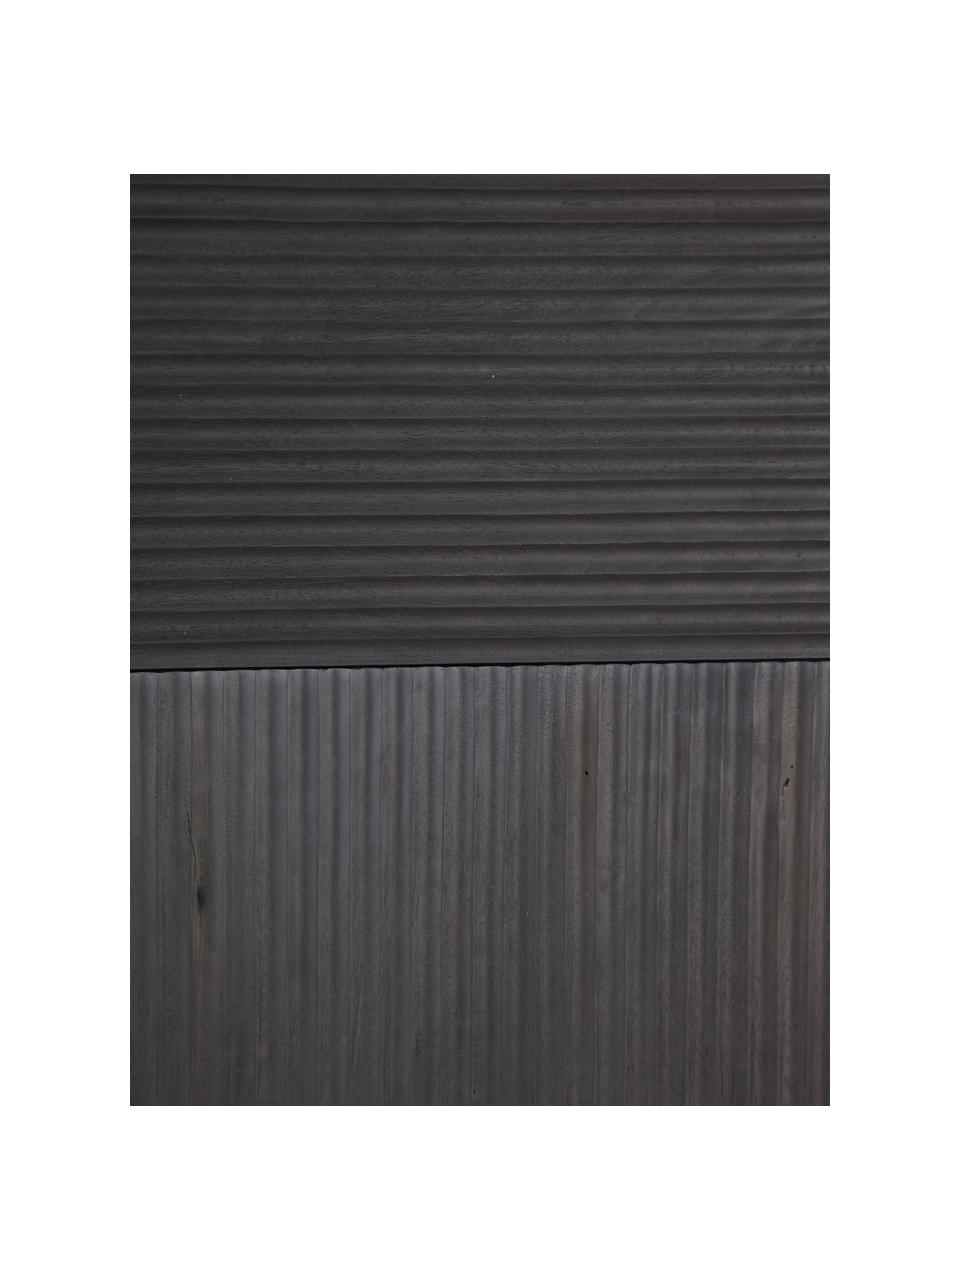 Acaciahouten dressoir Mamba met geribde voorzijde, Frame: gelakt acaciahout, Poten: gelakt metaal, Zwart, B 115 cm x H 140 cm